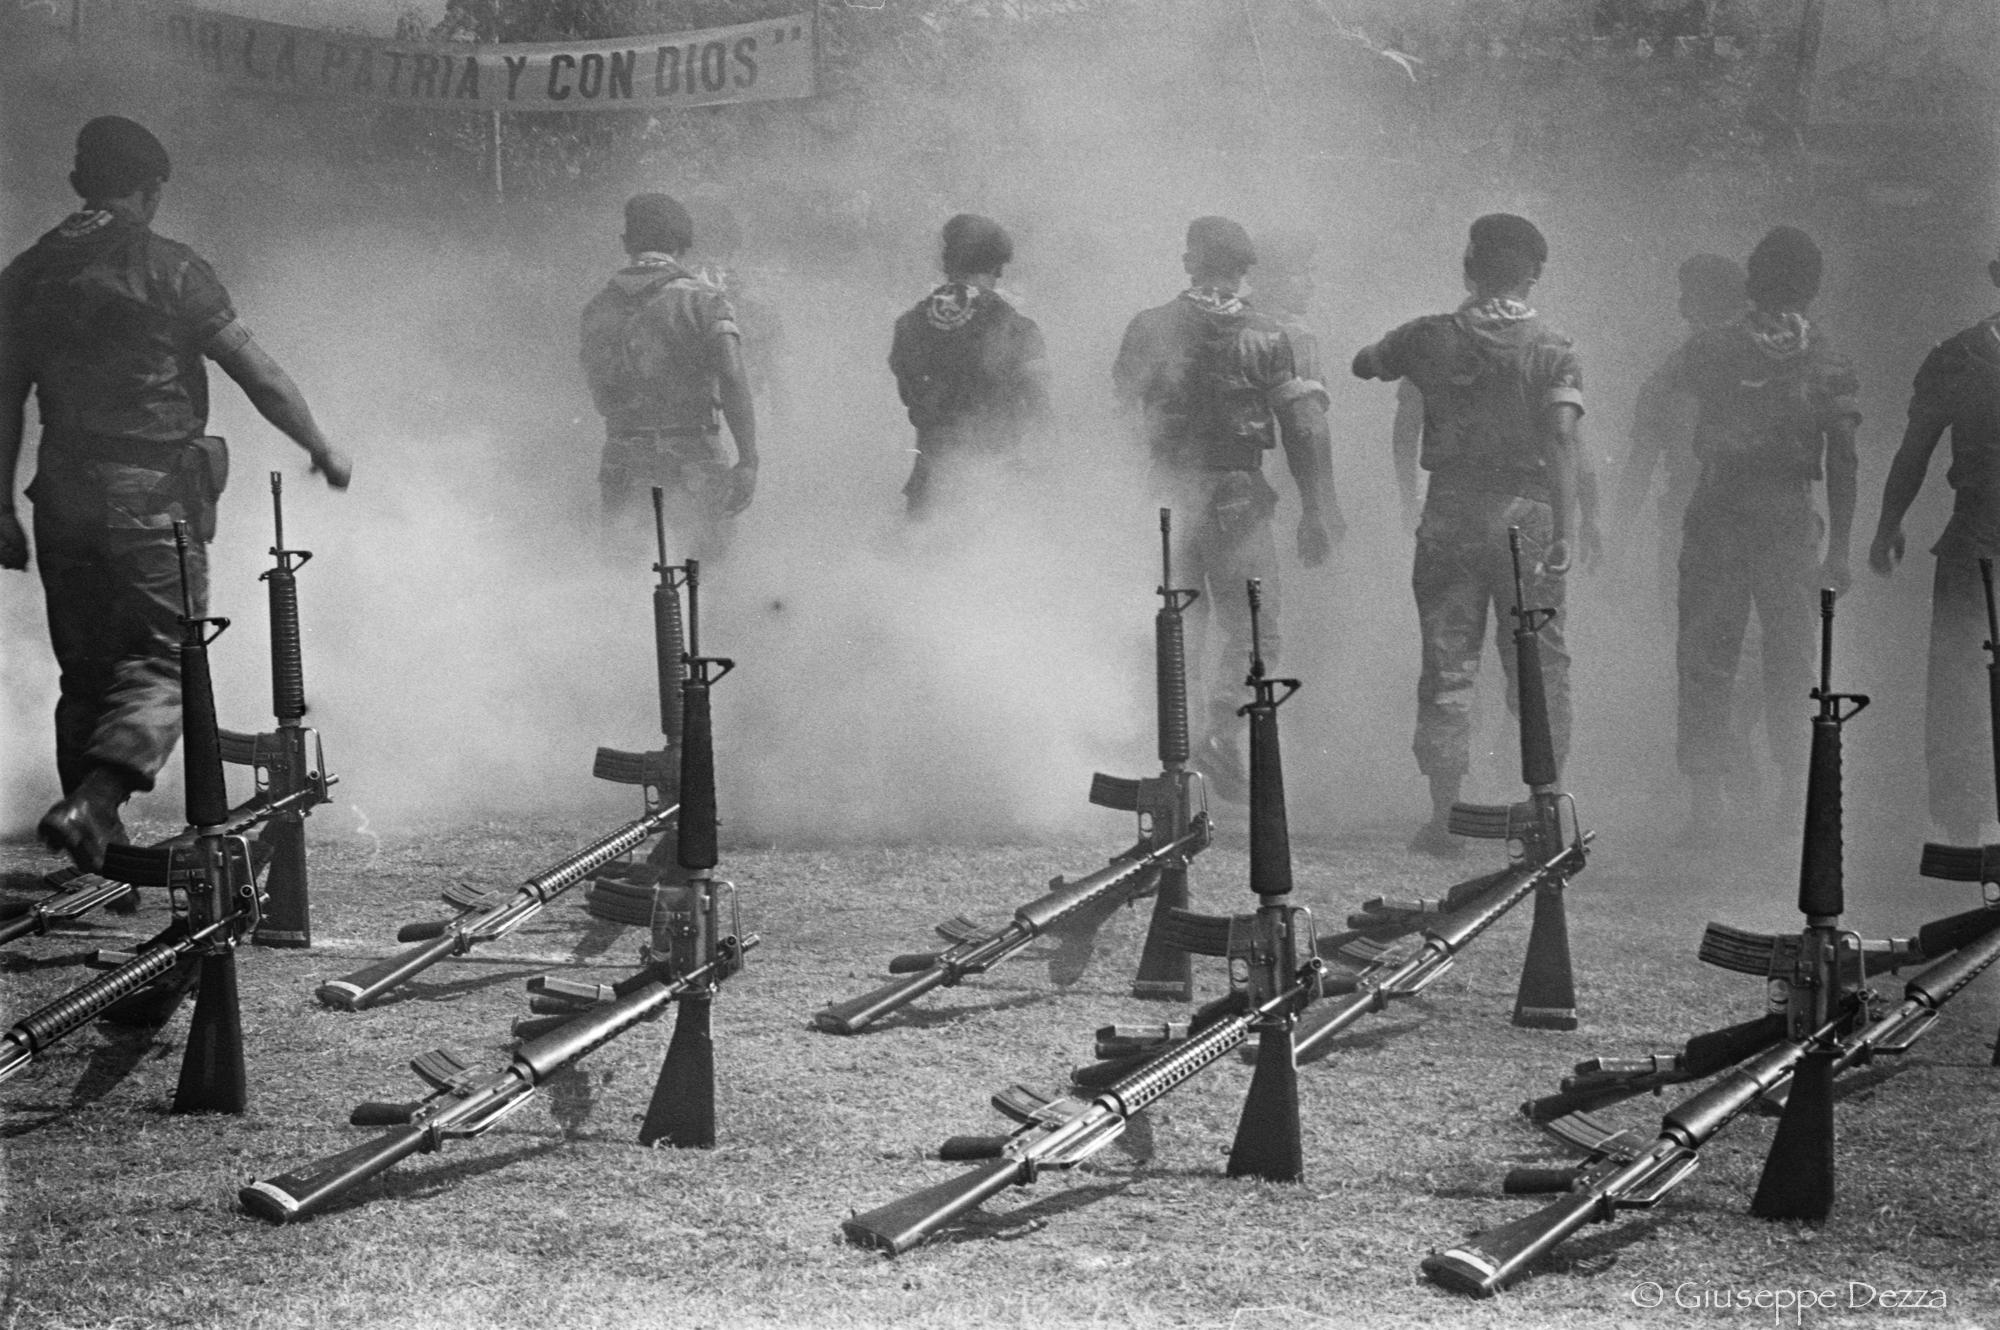 1992. Ceremonia de disolución del Batallón de Infantería de Reacción Inmediata Atlacatl, uno de las cinco batallones contrainsurgentes más temidos durante la guerra. Entrenados por los EE.UU., el Atlacatl inició operaciones en 1981. Foto de Giuseppe Dezza